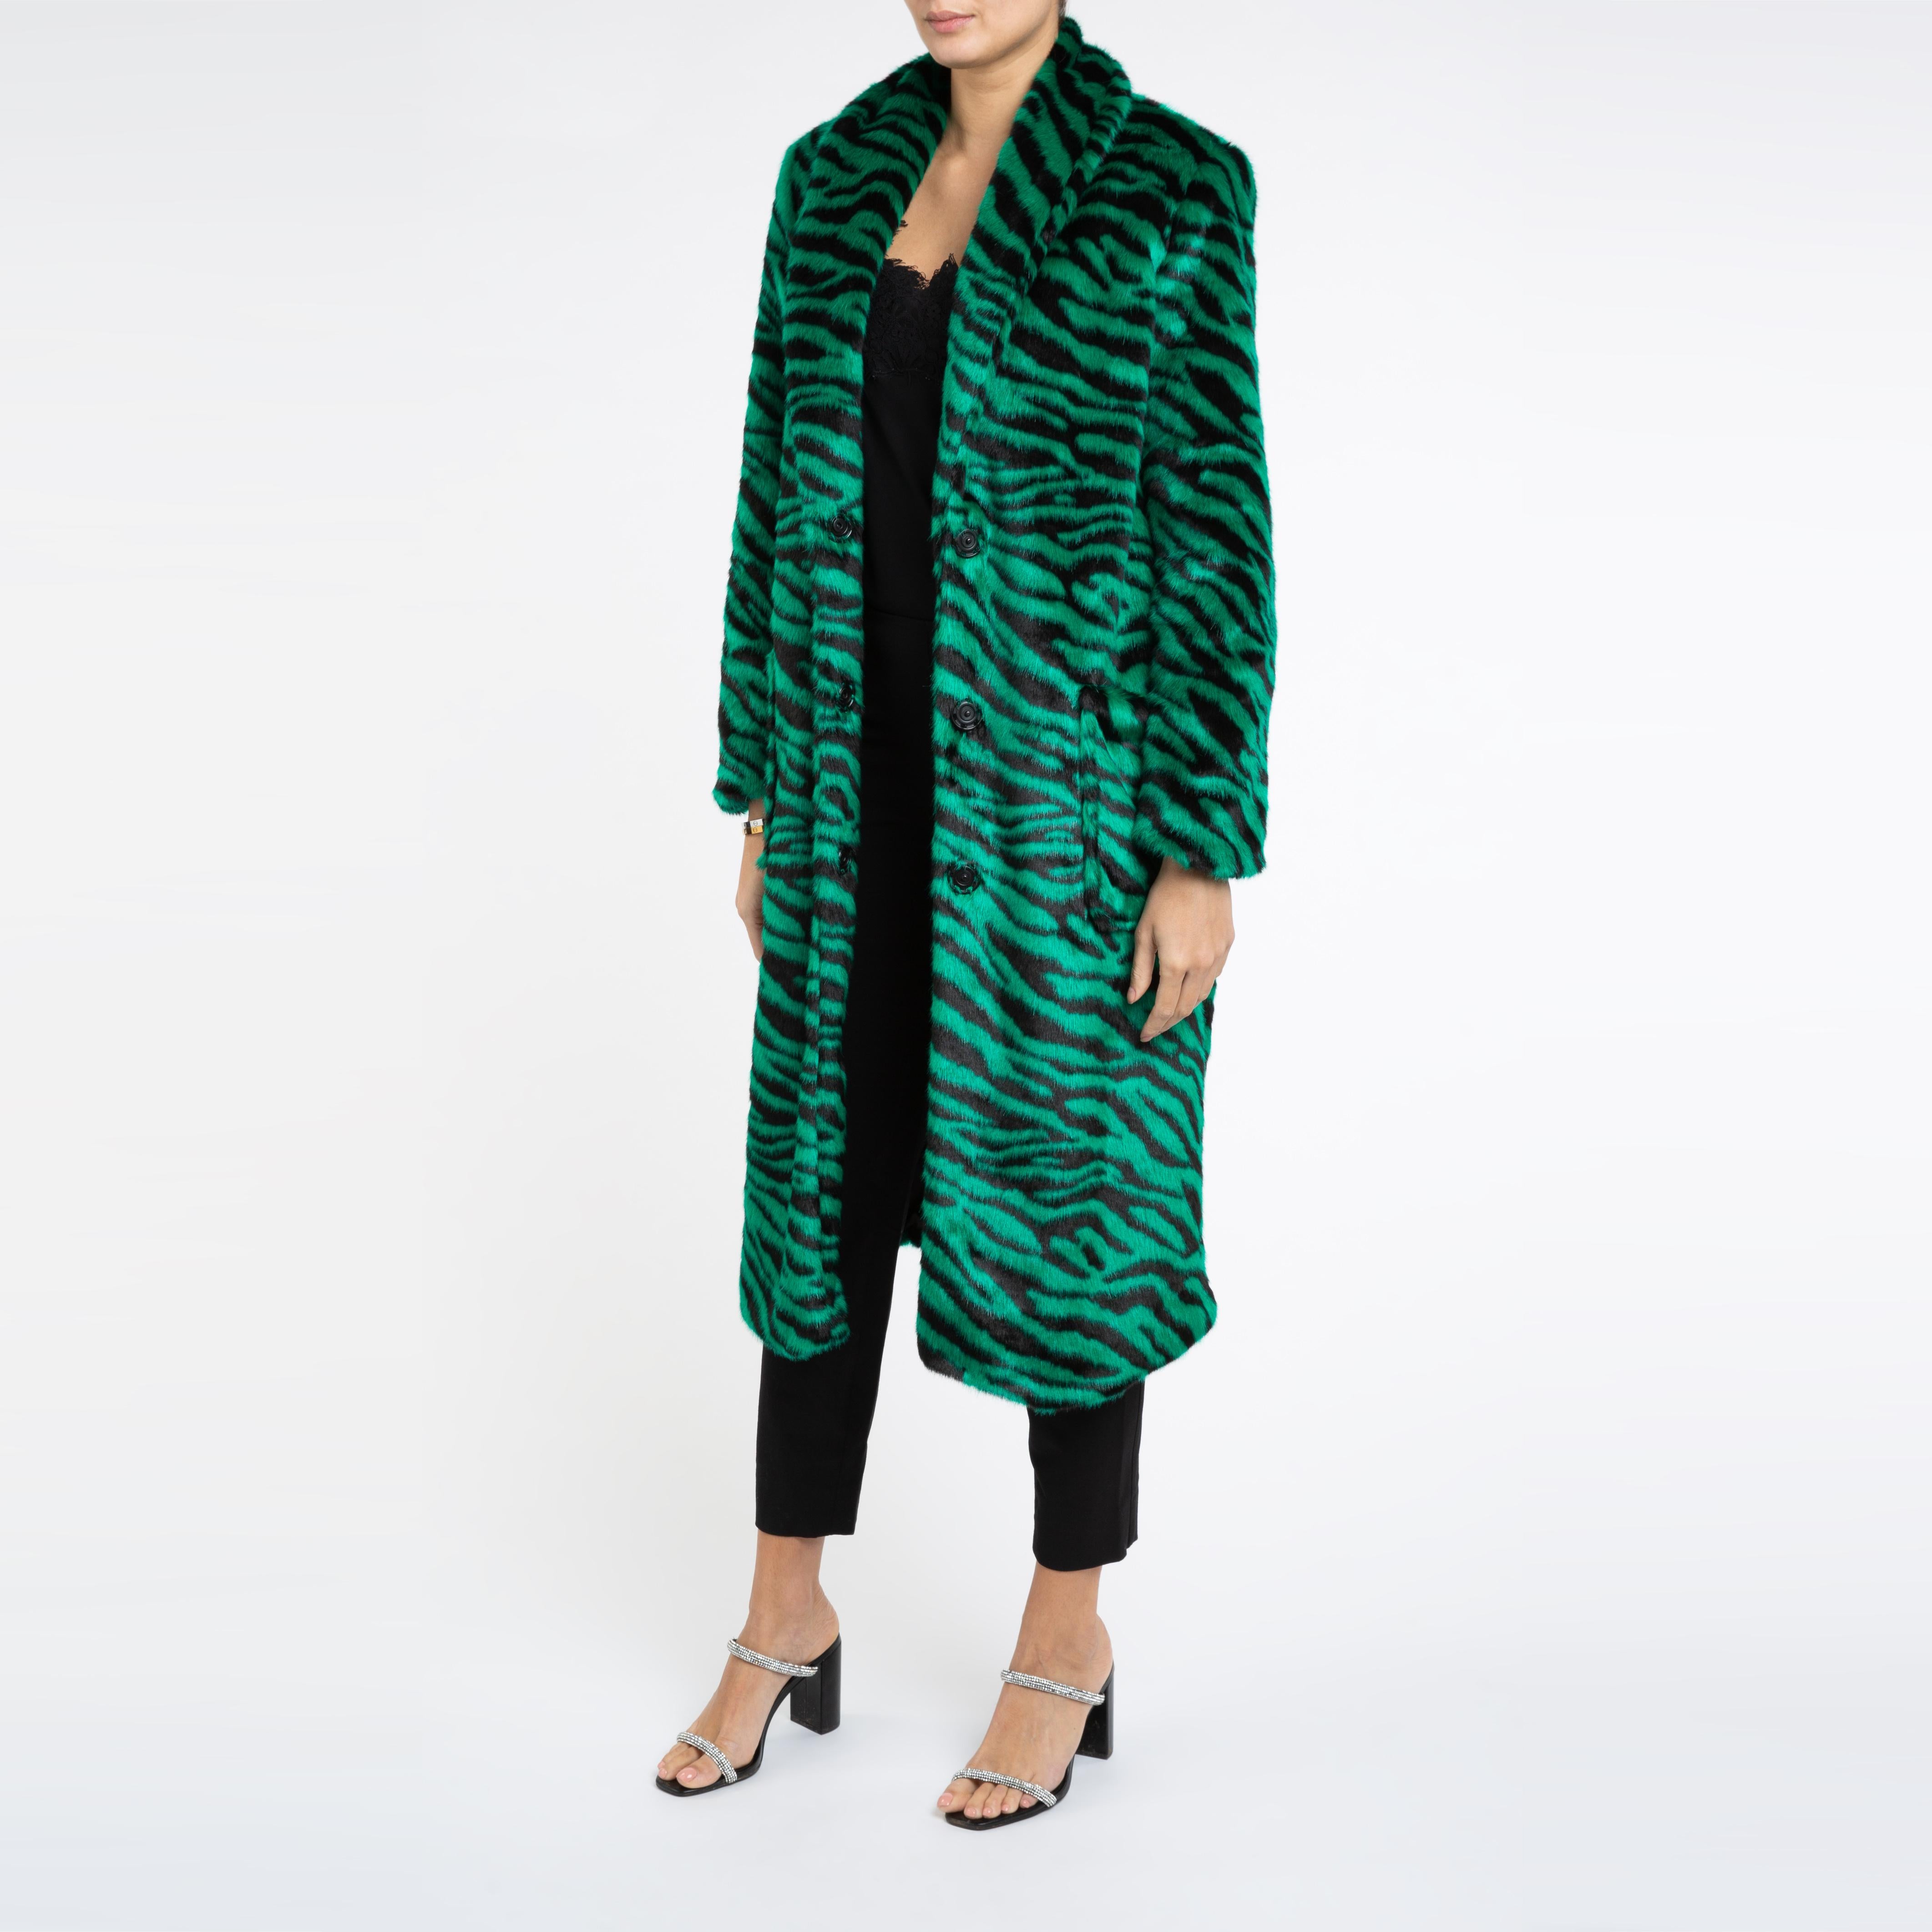 Esmeralda Kunstpelz-Mantel in Smaragdgrün mit Zebra-Druck, Größe uk 14, London Damen im Angebot